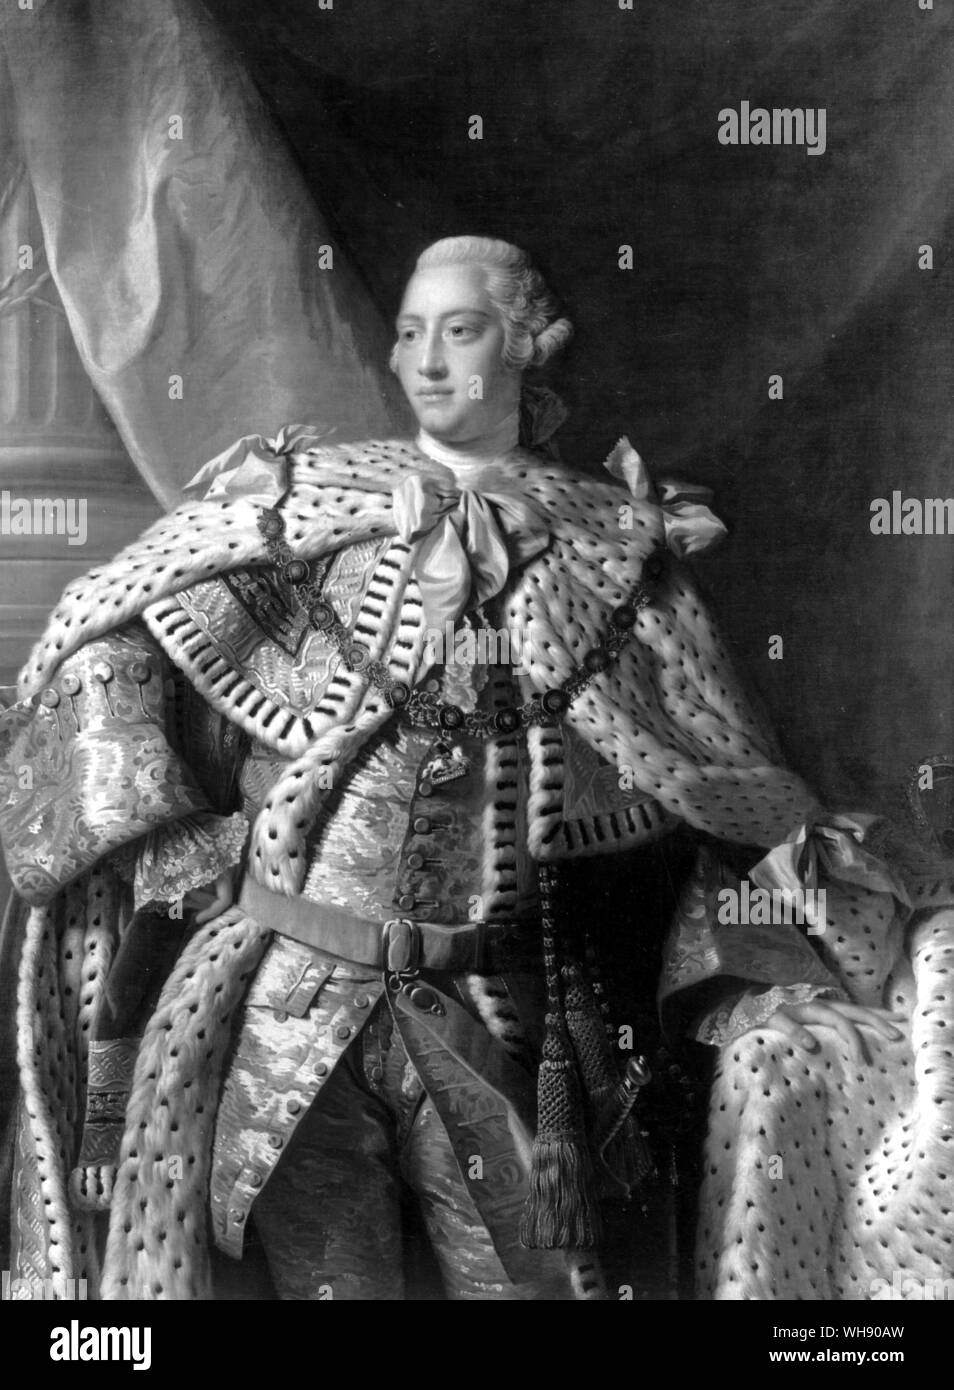 Georg III., König von England, von Allan Ramsey. Das Gericht in England war weit mehr formal als das Gericht in Neapel. Es war nur widerwillig, dass George III Sir William's Ehe mit Emma, wenn Sie nach England im Jahre 1791 kehrte zugestimmt.. Stockfoto